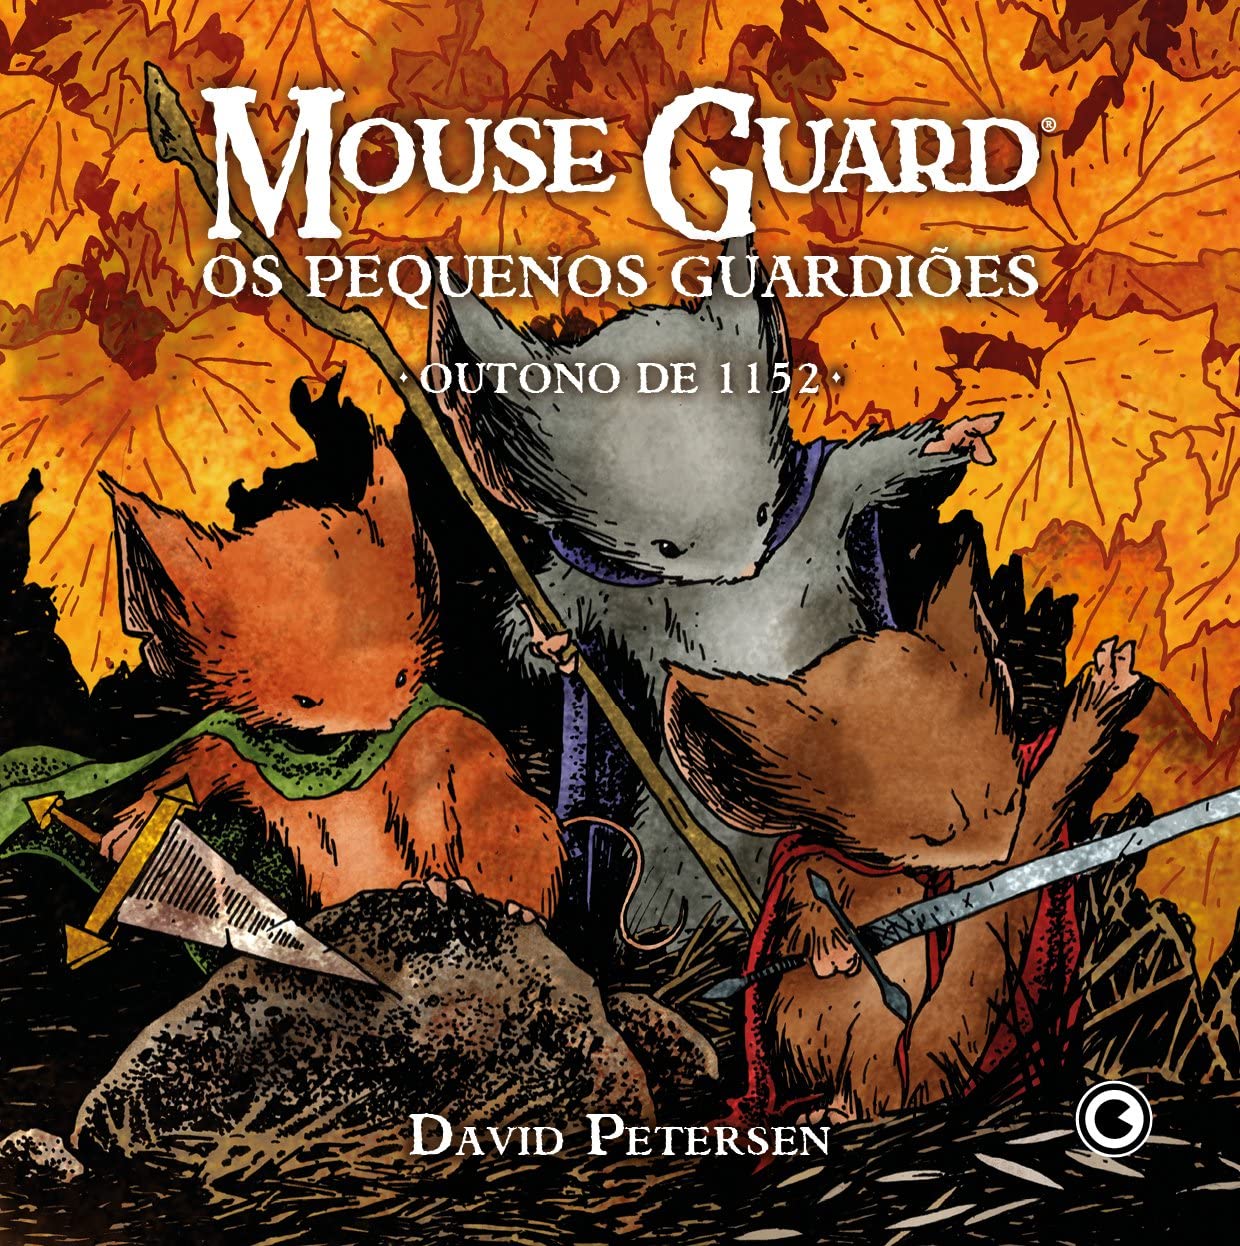 David Petersen: Mouse Guard – Os Pequenos Guardiões: Outono de 1152 (GraphicNovel, Português language, Conrad)